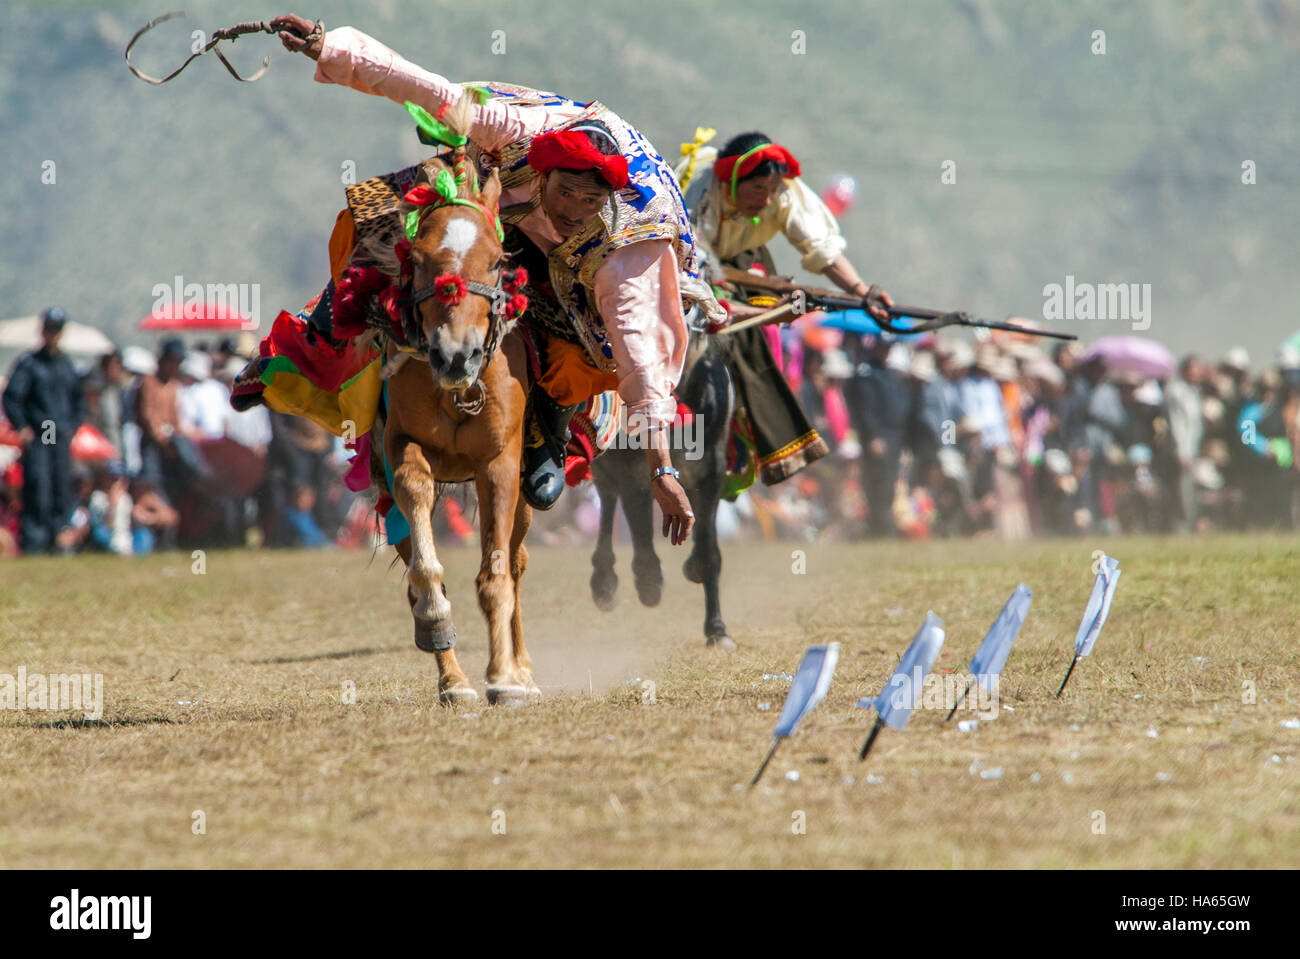 Khampa horseman sparare pezzi di carta con pietra focaia pistole di bloccaggio dal dorso di un cavallo al galoppo a Yushu Horse Racing Festival. Qinghai, Cina. Foto Stock